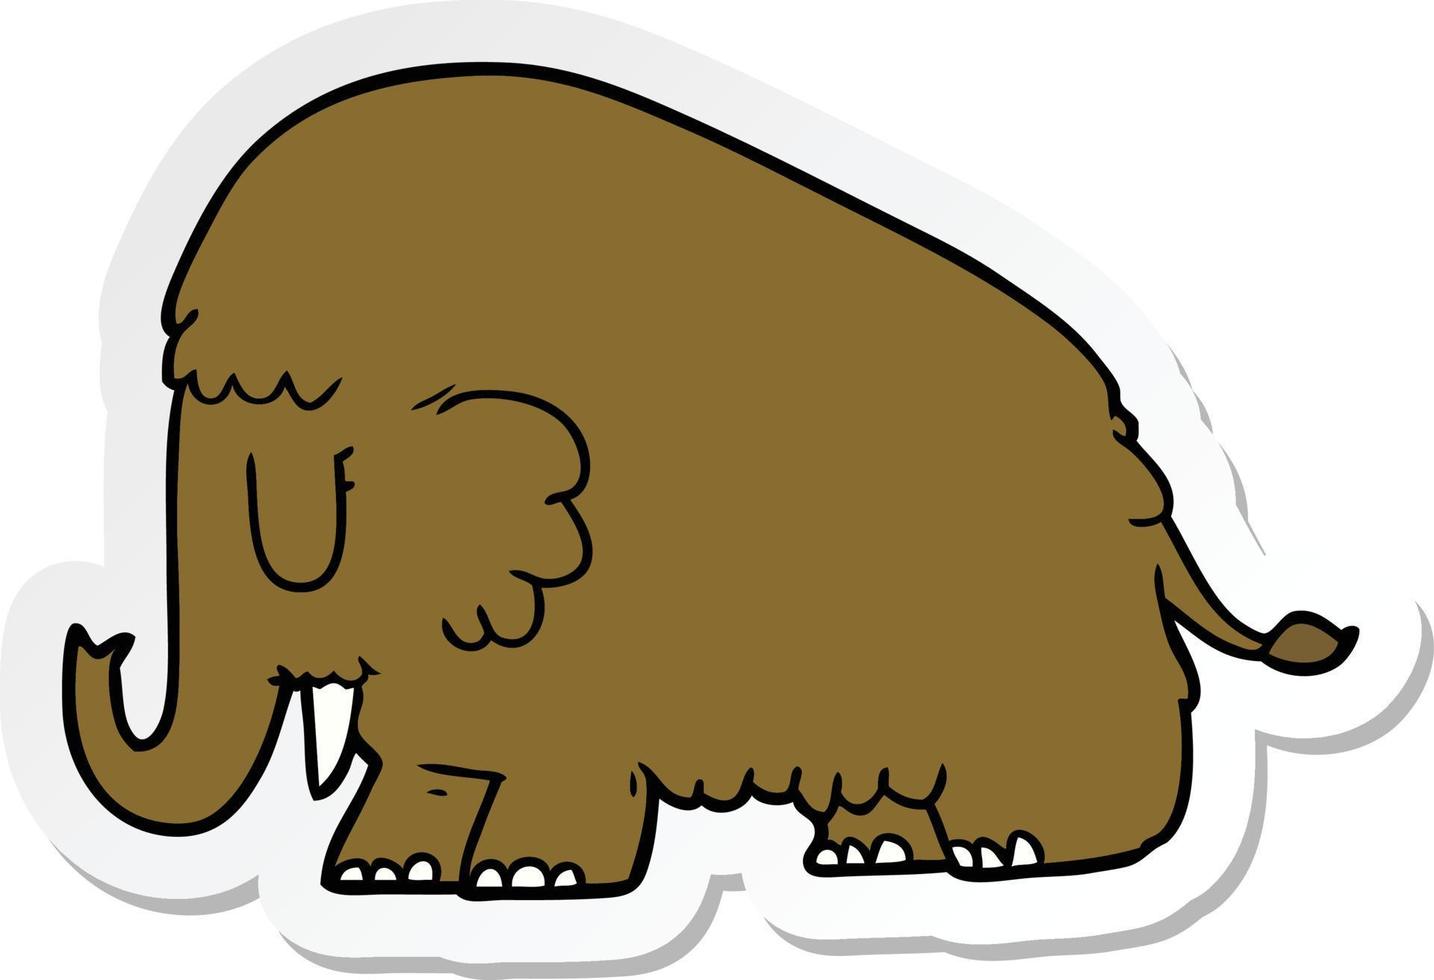 adesivo de um mamute de desenho animado vetor